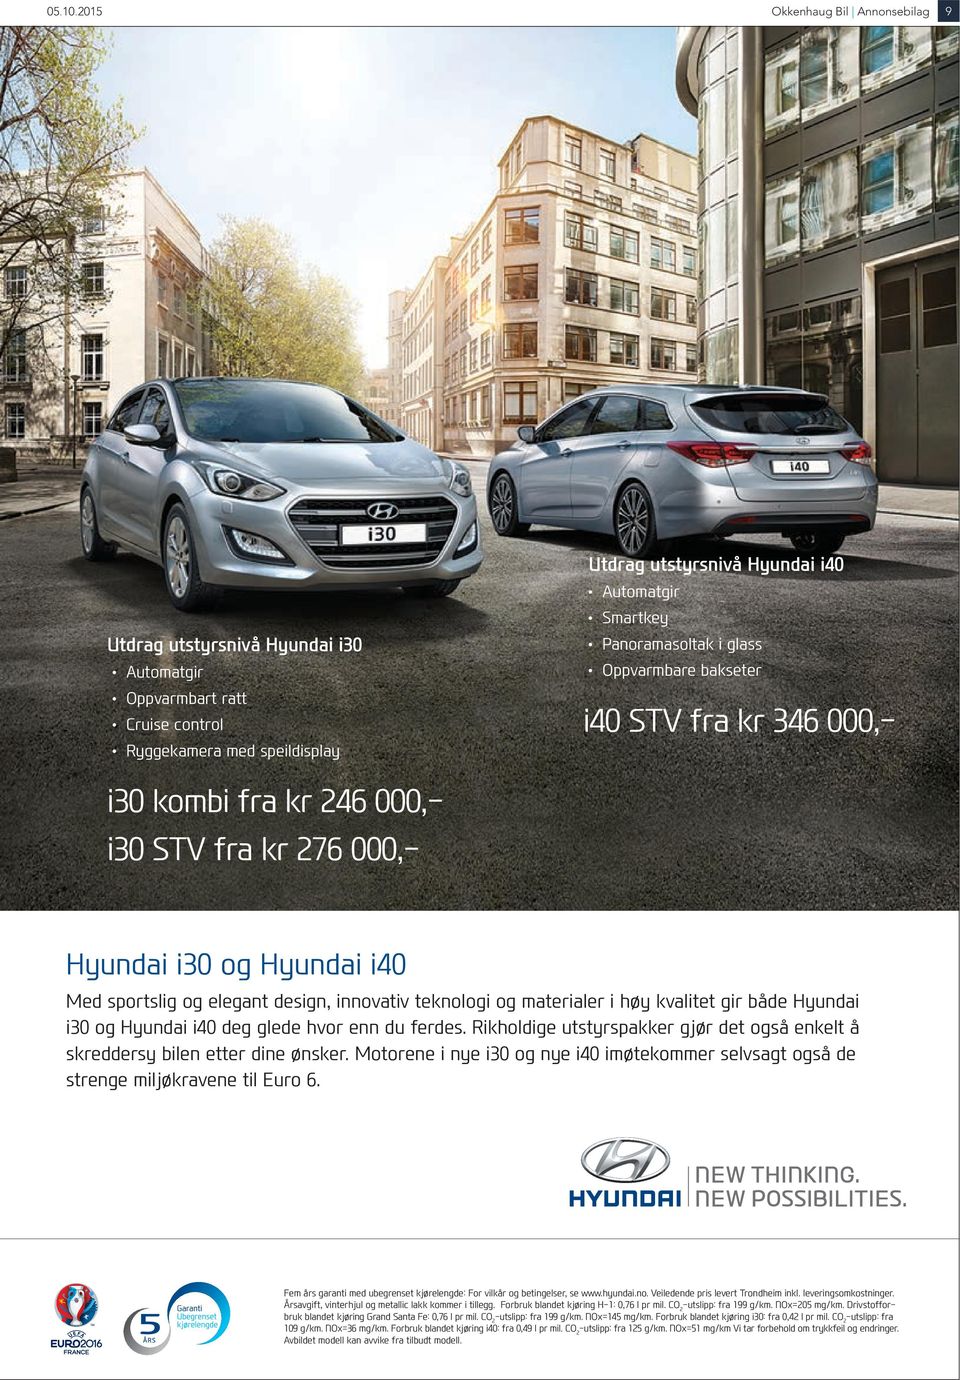 utstyrsnivå Hyundai i40 Automatgir Smartkey Panoramasoltak i glass Oppvarmbare bakseter i40 STV fra kr 346 000,- Hyundai i30 og Hyundai i40 Med sportslig og elegant design, innovativ teknologi og